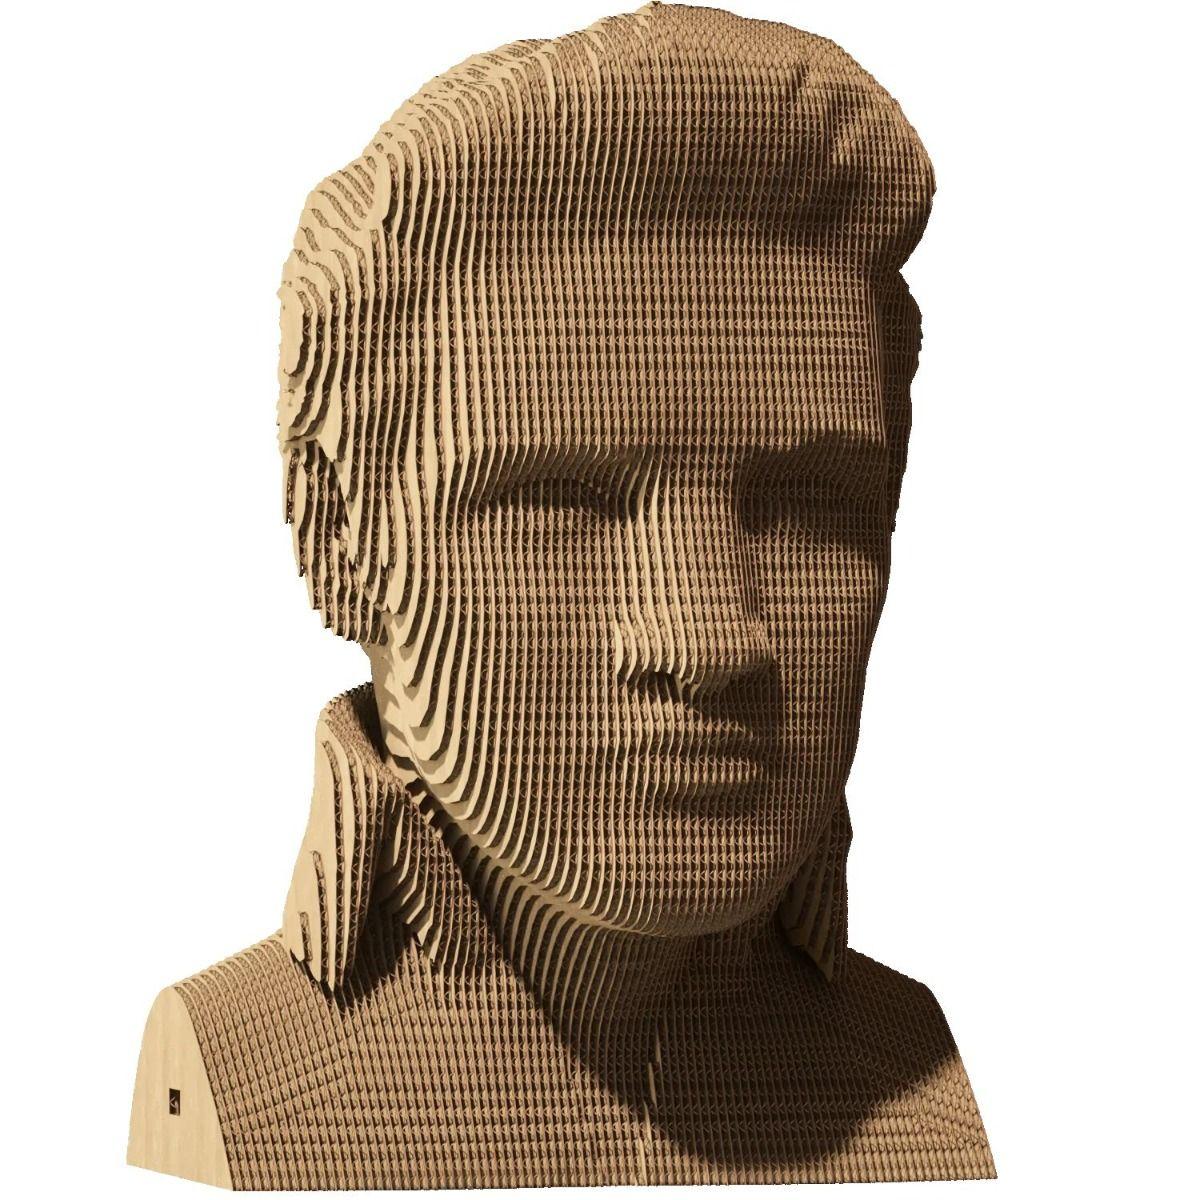 Pusle Cartonic: Elvis Presley, 3D